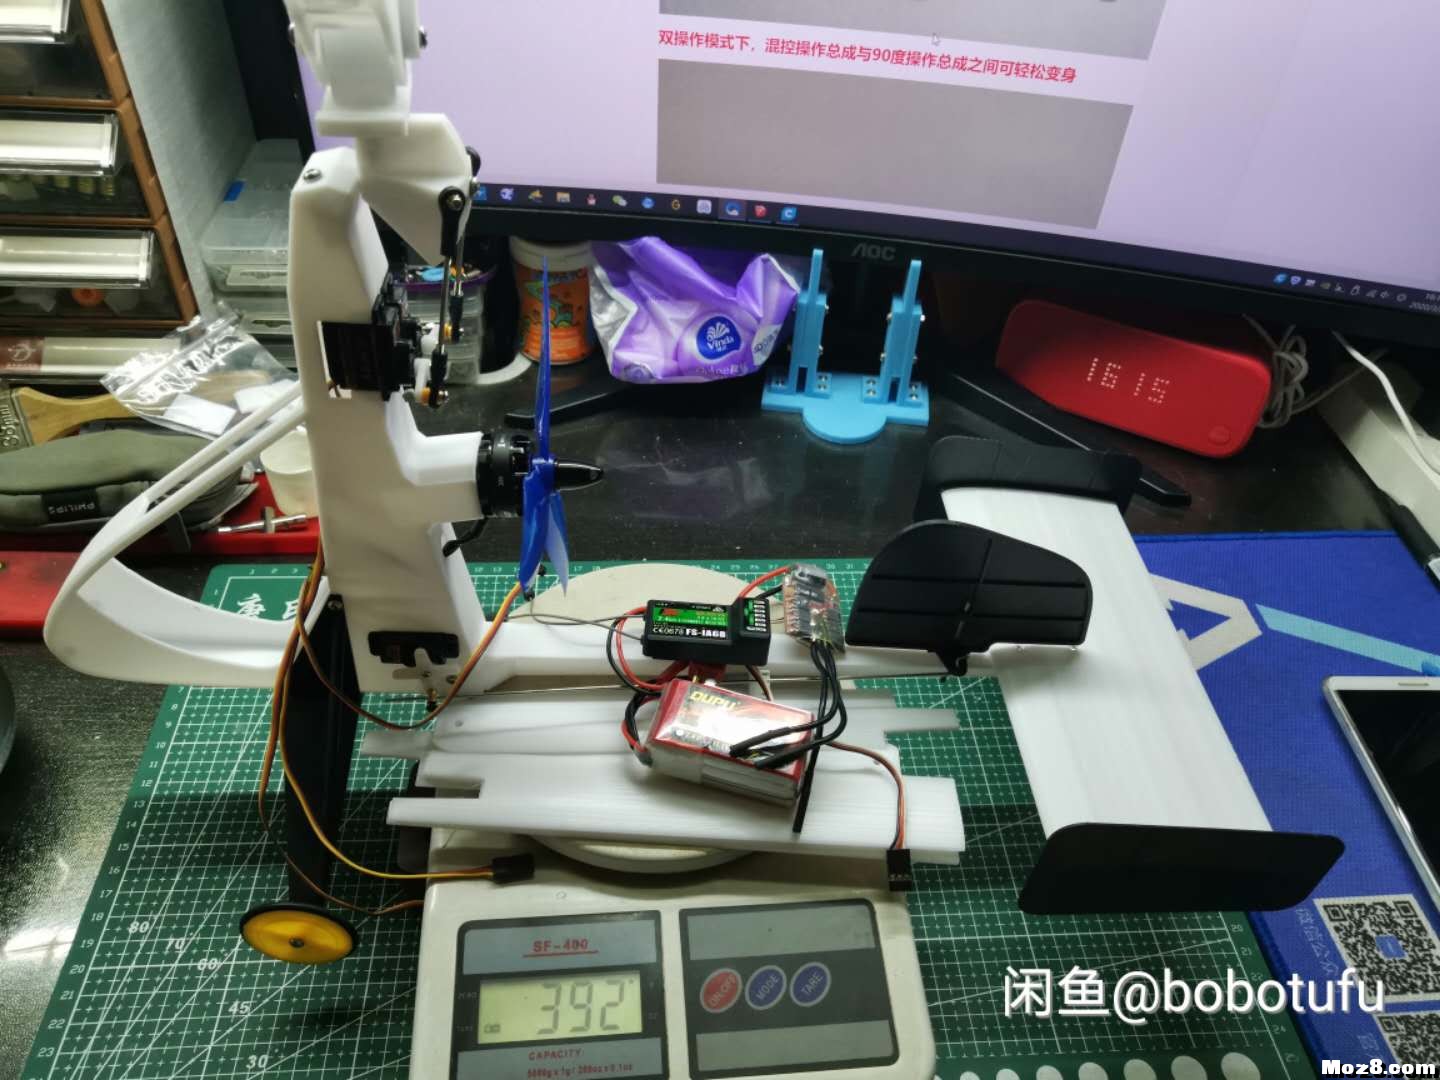 3D打印遥控旋翼机 电池,舵机,飞控,电调,电机 作者:bobotufu 5615 